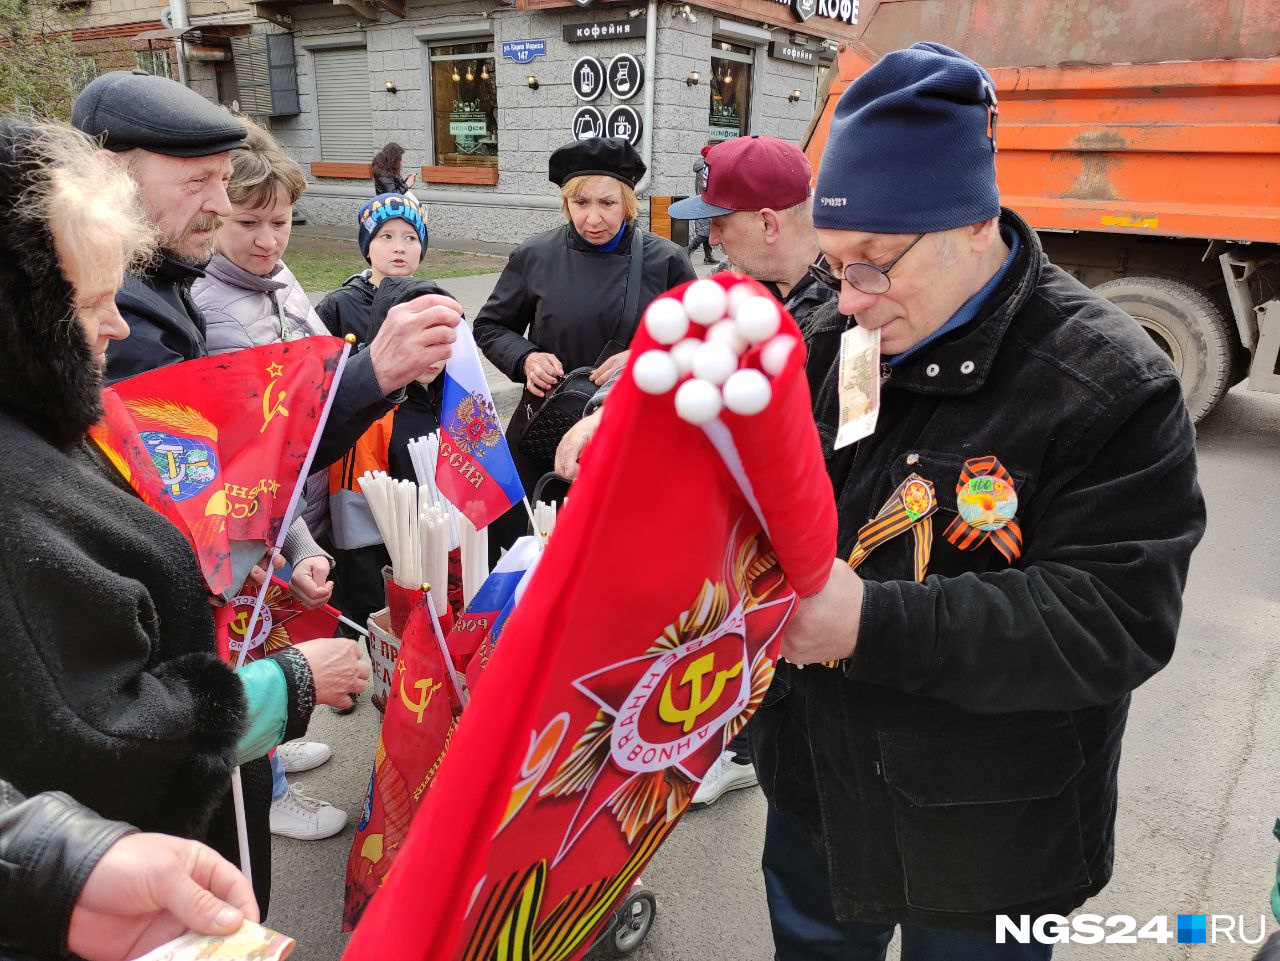 На улицах вместе с праздником началась и бойкая торговля флажками. Их продают за 50–100 рублей. Судя по кадрам, желающих немало